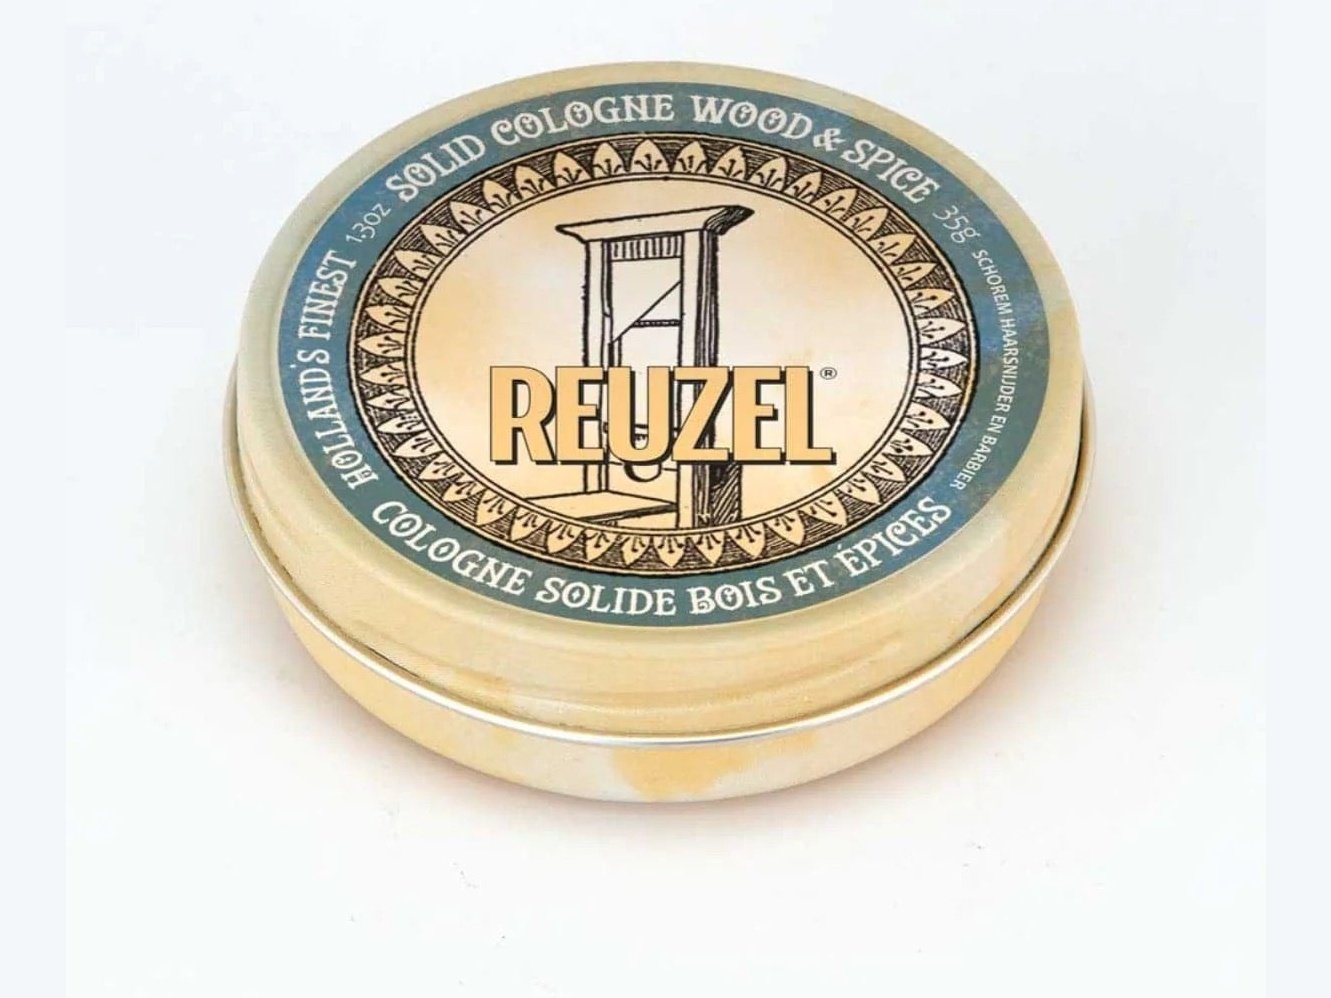 Reuzel Wood & Spice Solid Cologne Balm, 1.3 oz.